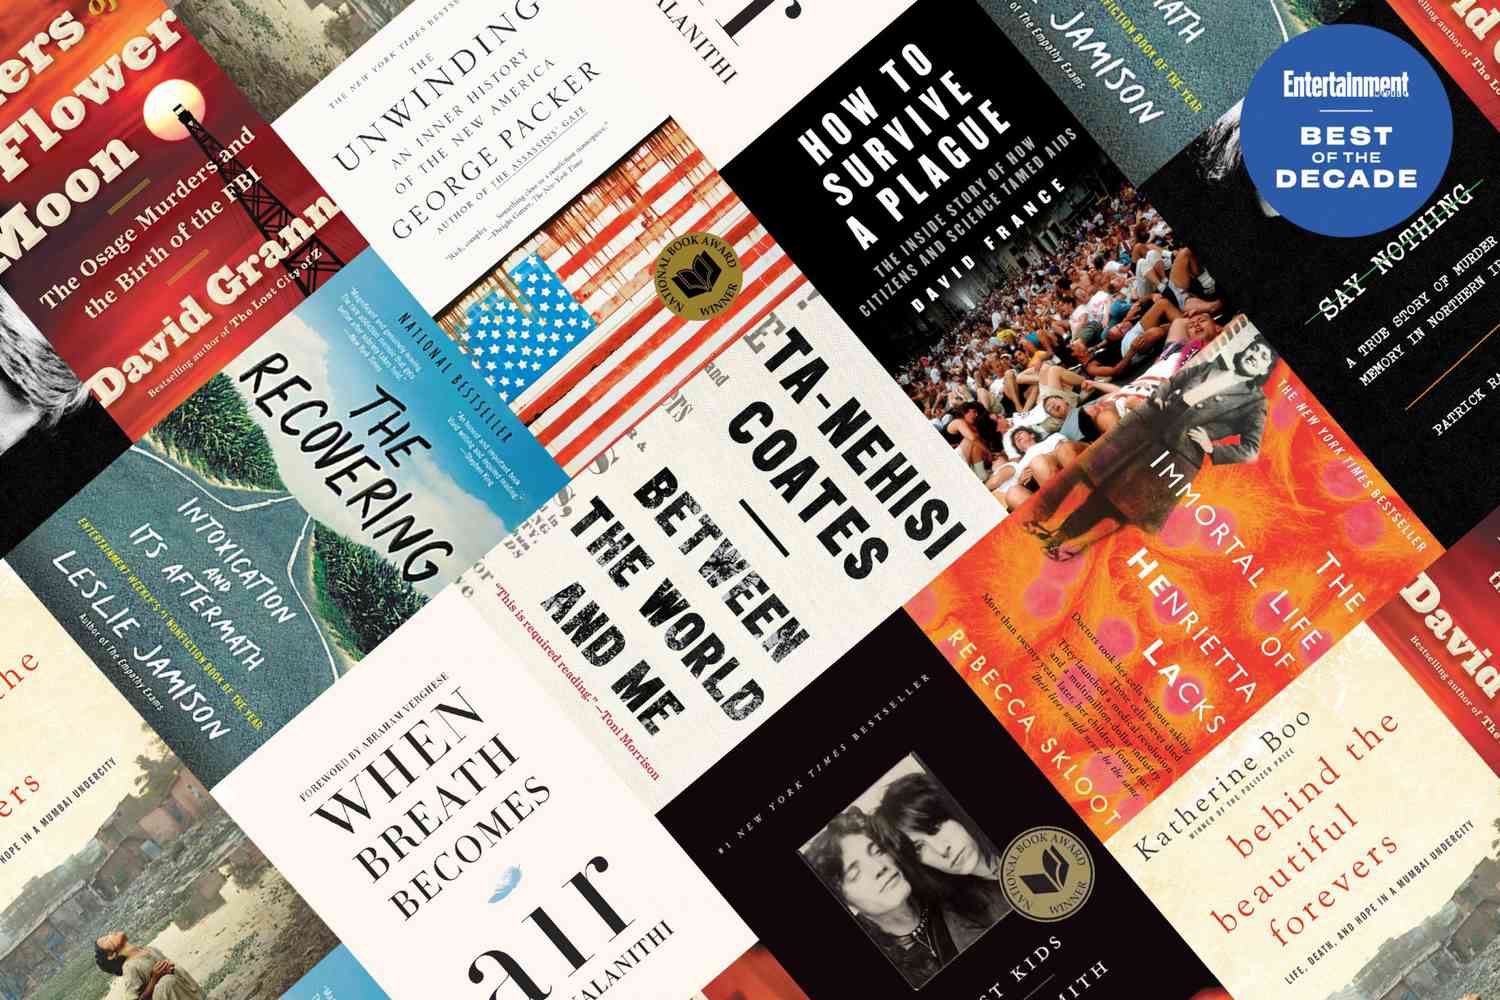 Patti Top nonfiction books of the decade | EW.com